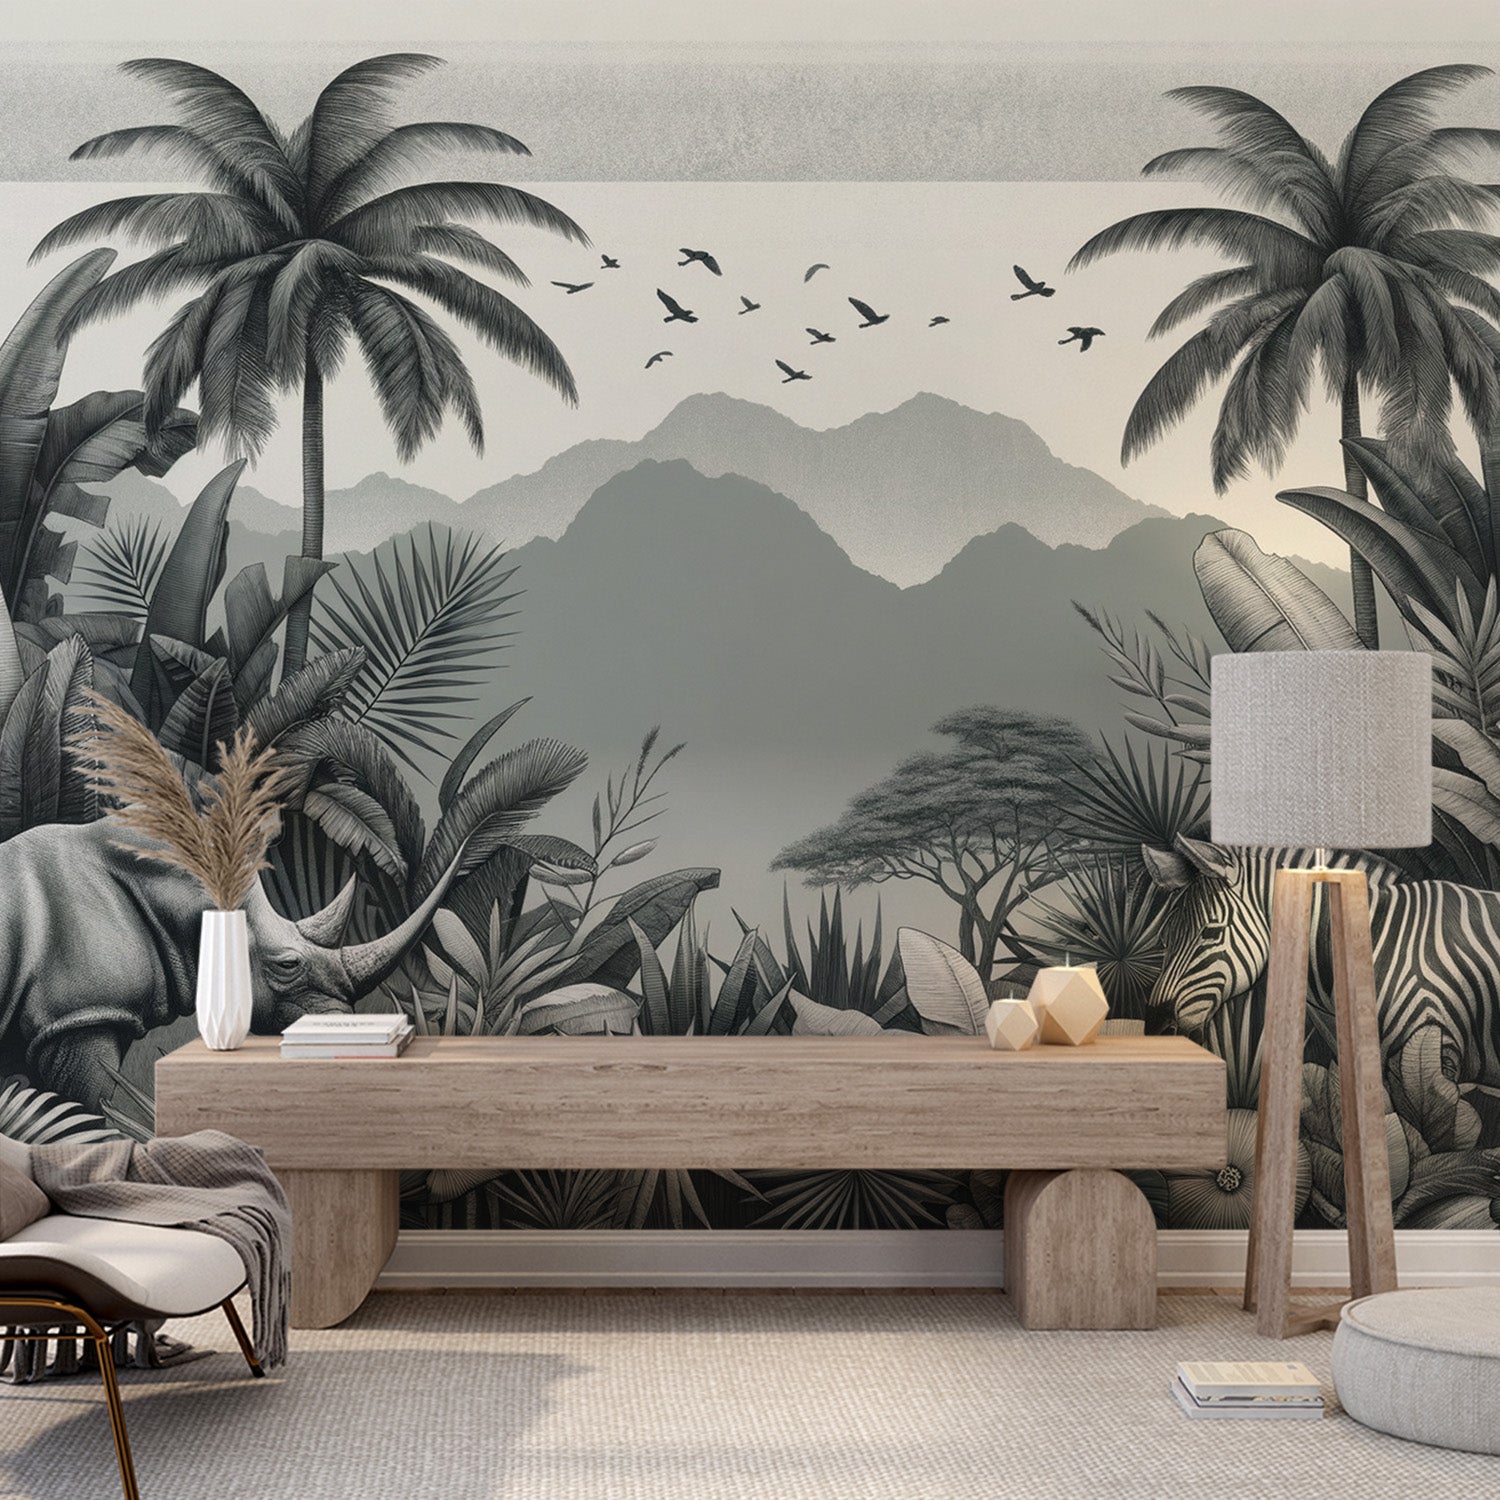  Papier peint feuillage tropical Rhinocéros et zèbres avec relief montagneux